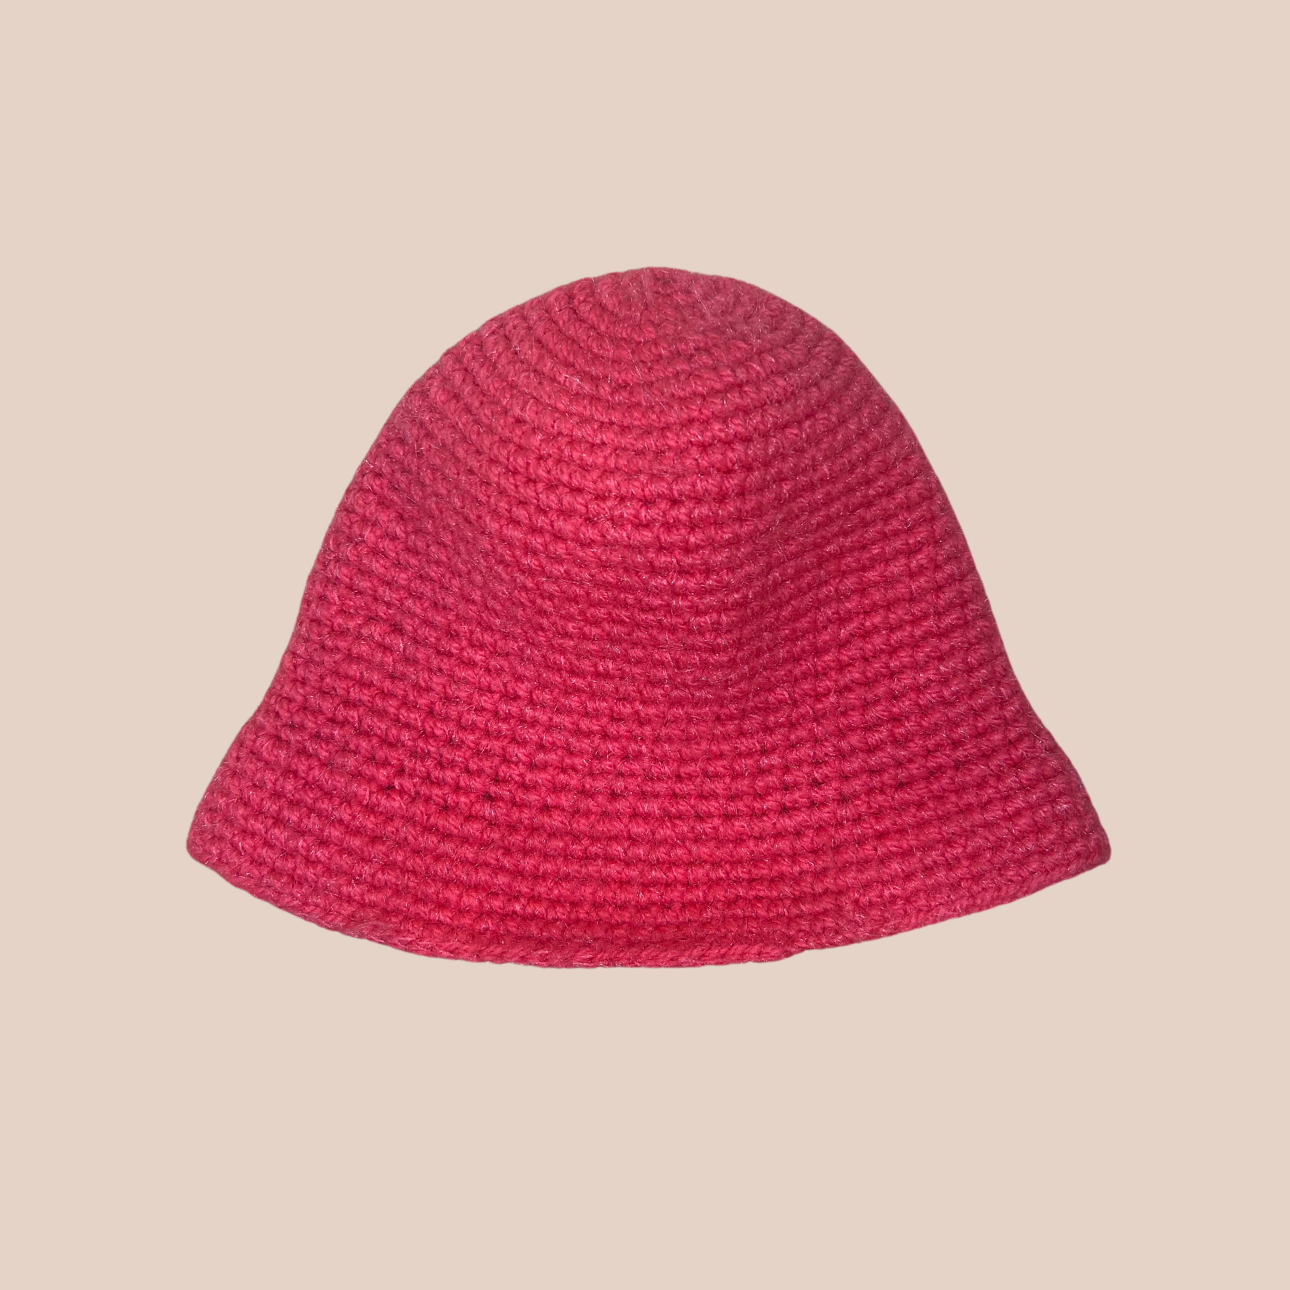 Un bucket hat crocheté en laine et acrylique, arborant un rose vif et audacieux